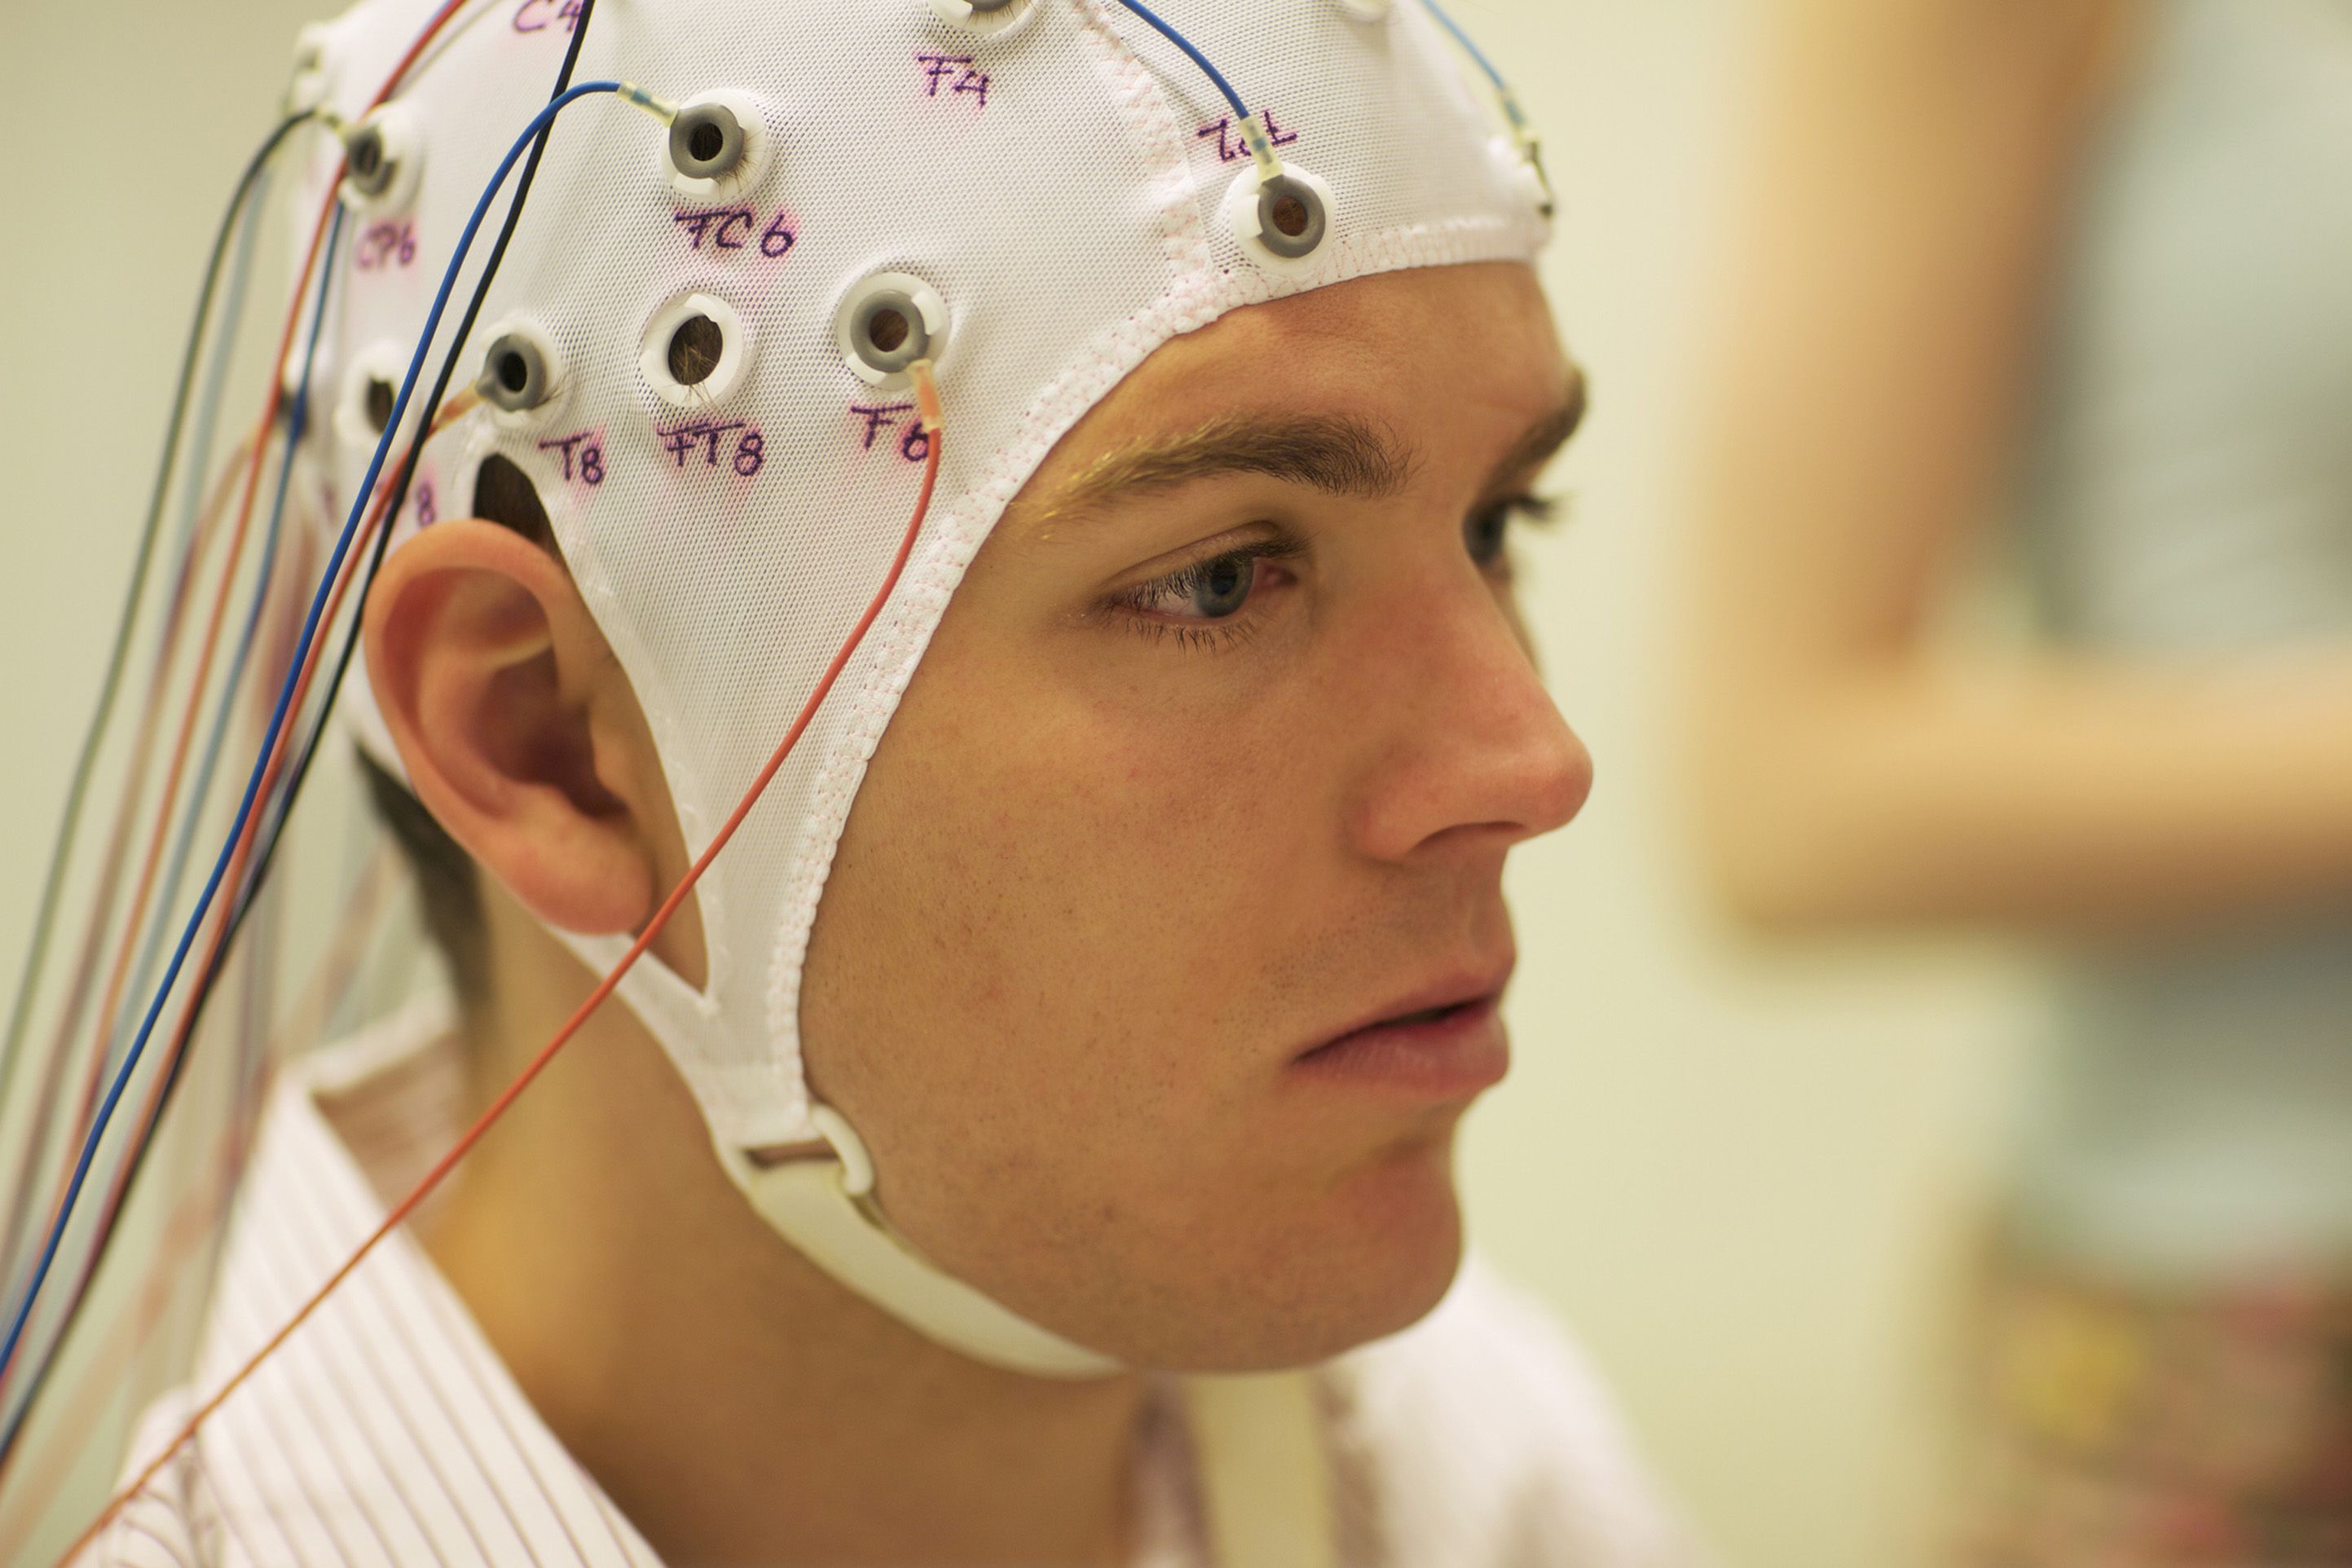 Шлем для ээг. Шапочка для ЭЭГ. Исследование головы. Шлем для головного мозга.